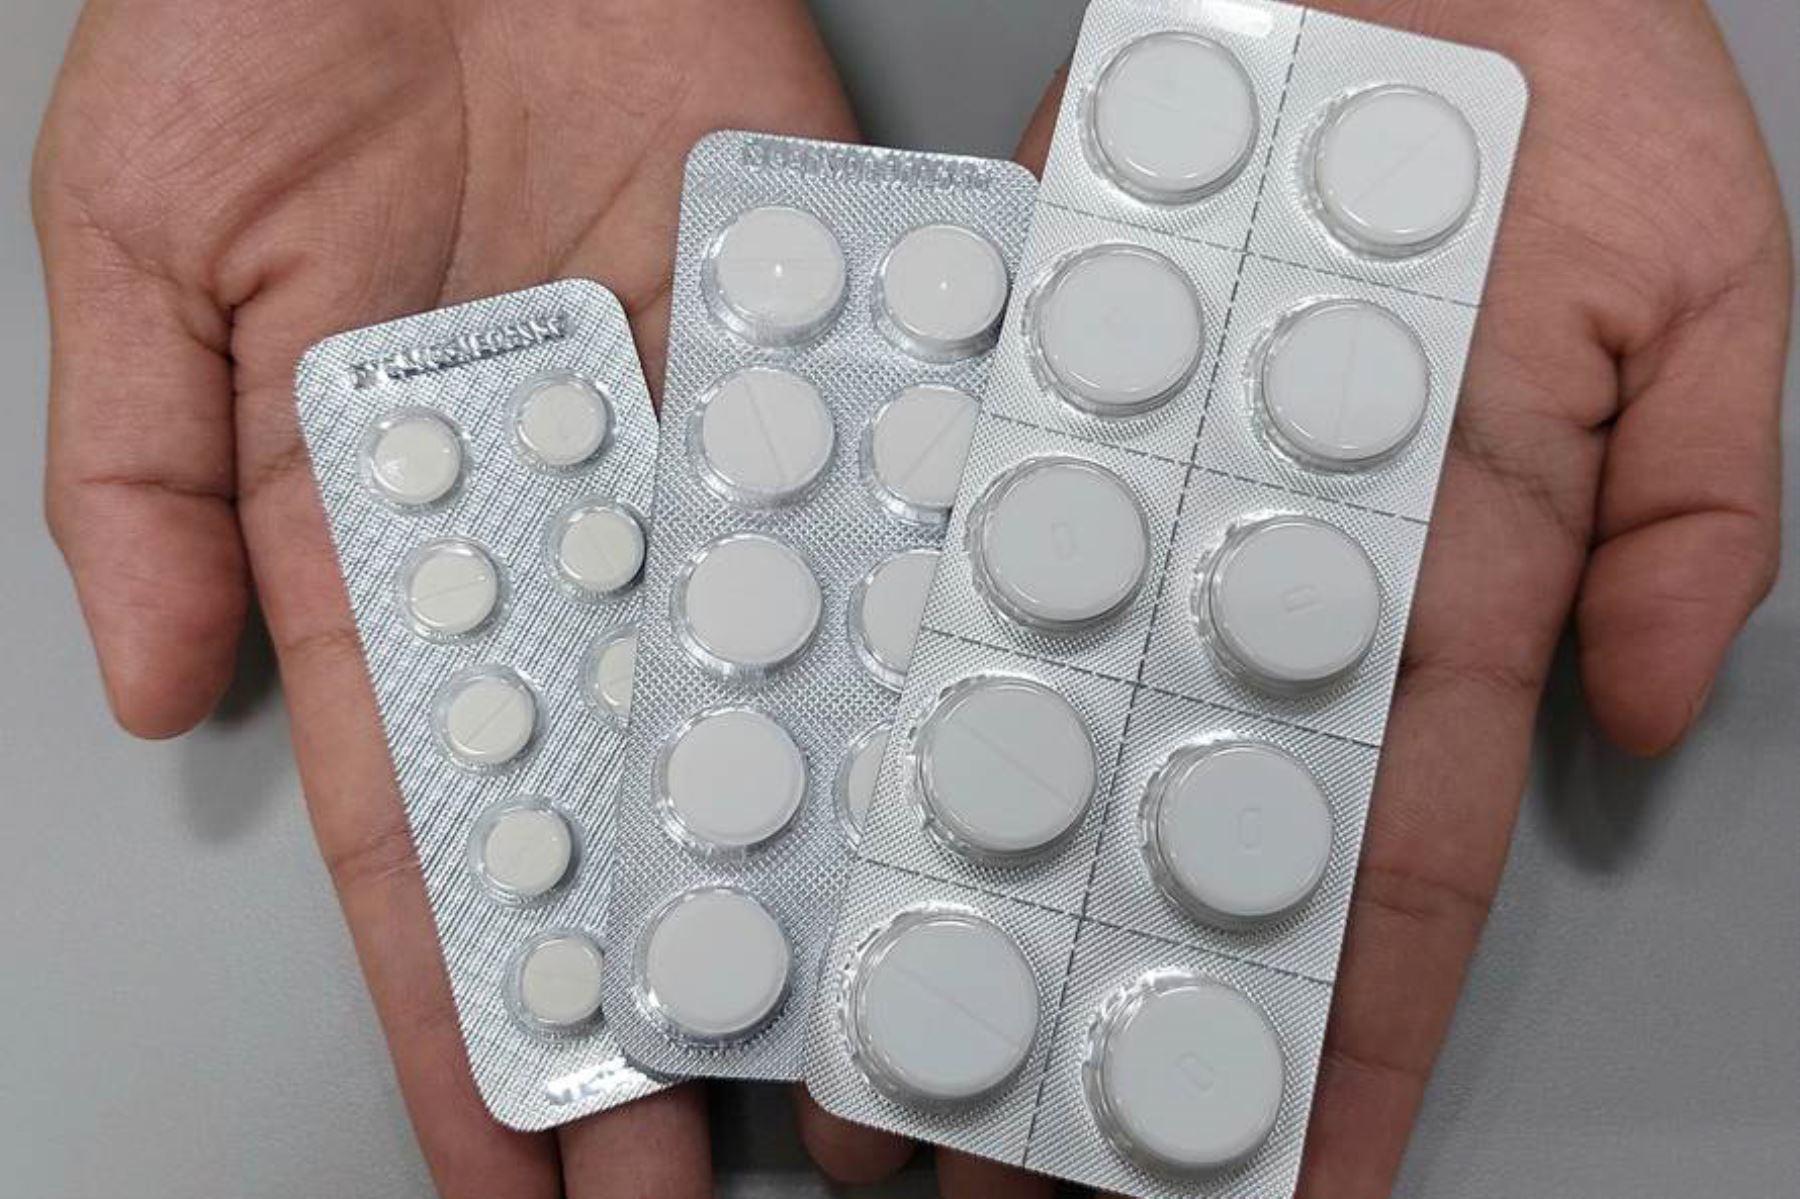 Pastillas del fármaco clonazepam, cuya venta debe realizarse con receta médica. Foto: INTERNET/Medios